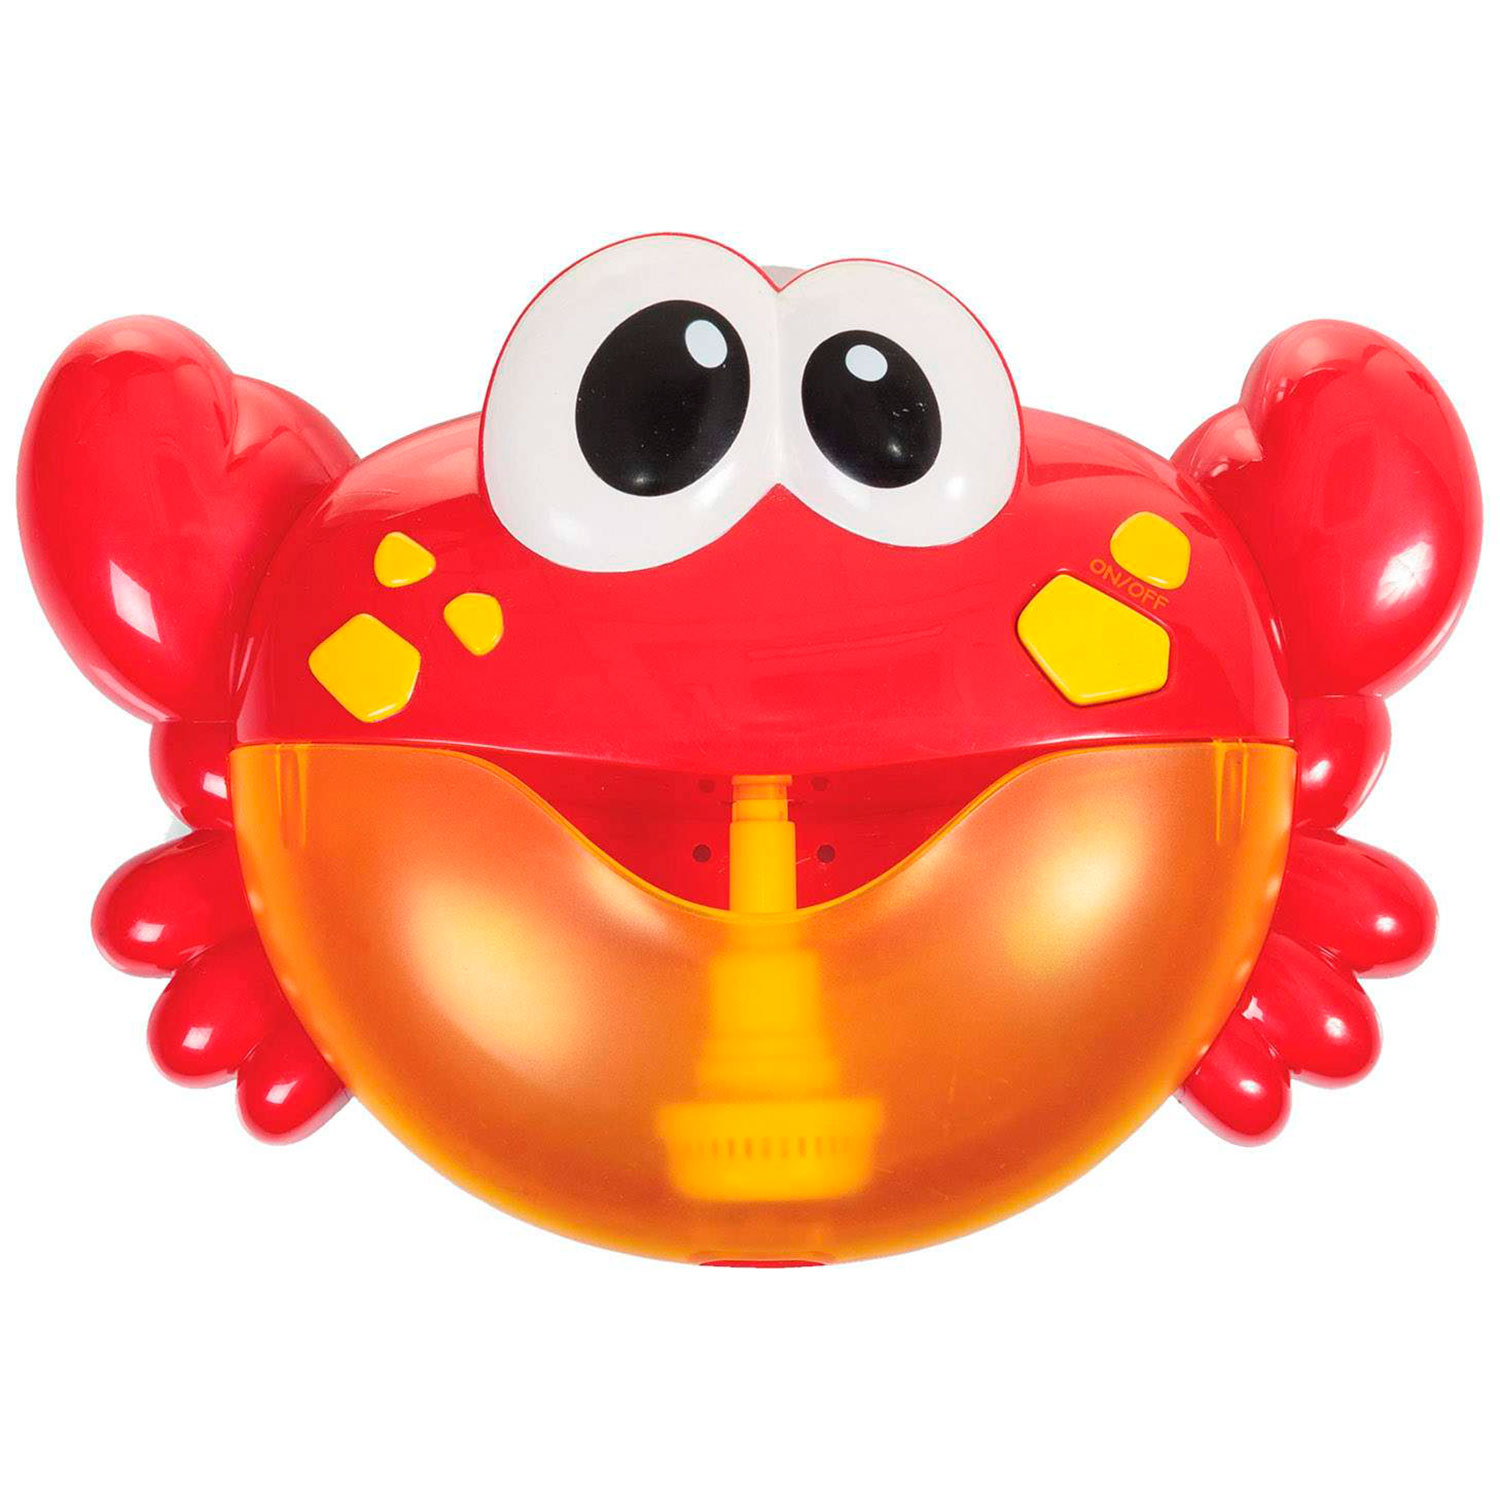 Музыкальный краб. Игрушка на присоске для игры в ванне «Крабик», пузыри. Игрушка для ванны краб. Музыкальная игрушка для ванной. Игрушка Крабик музыкальный.